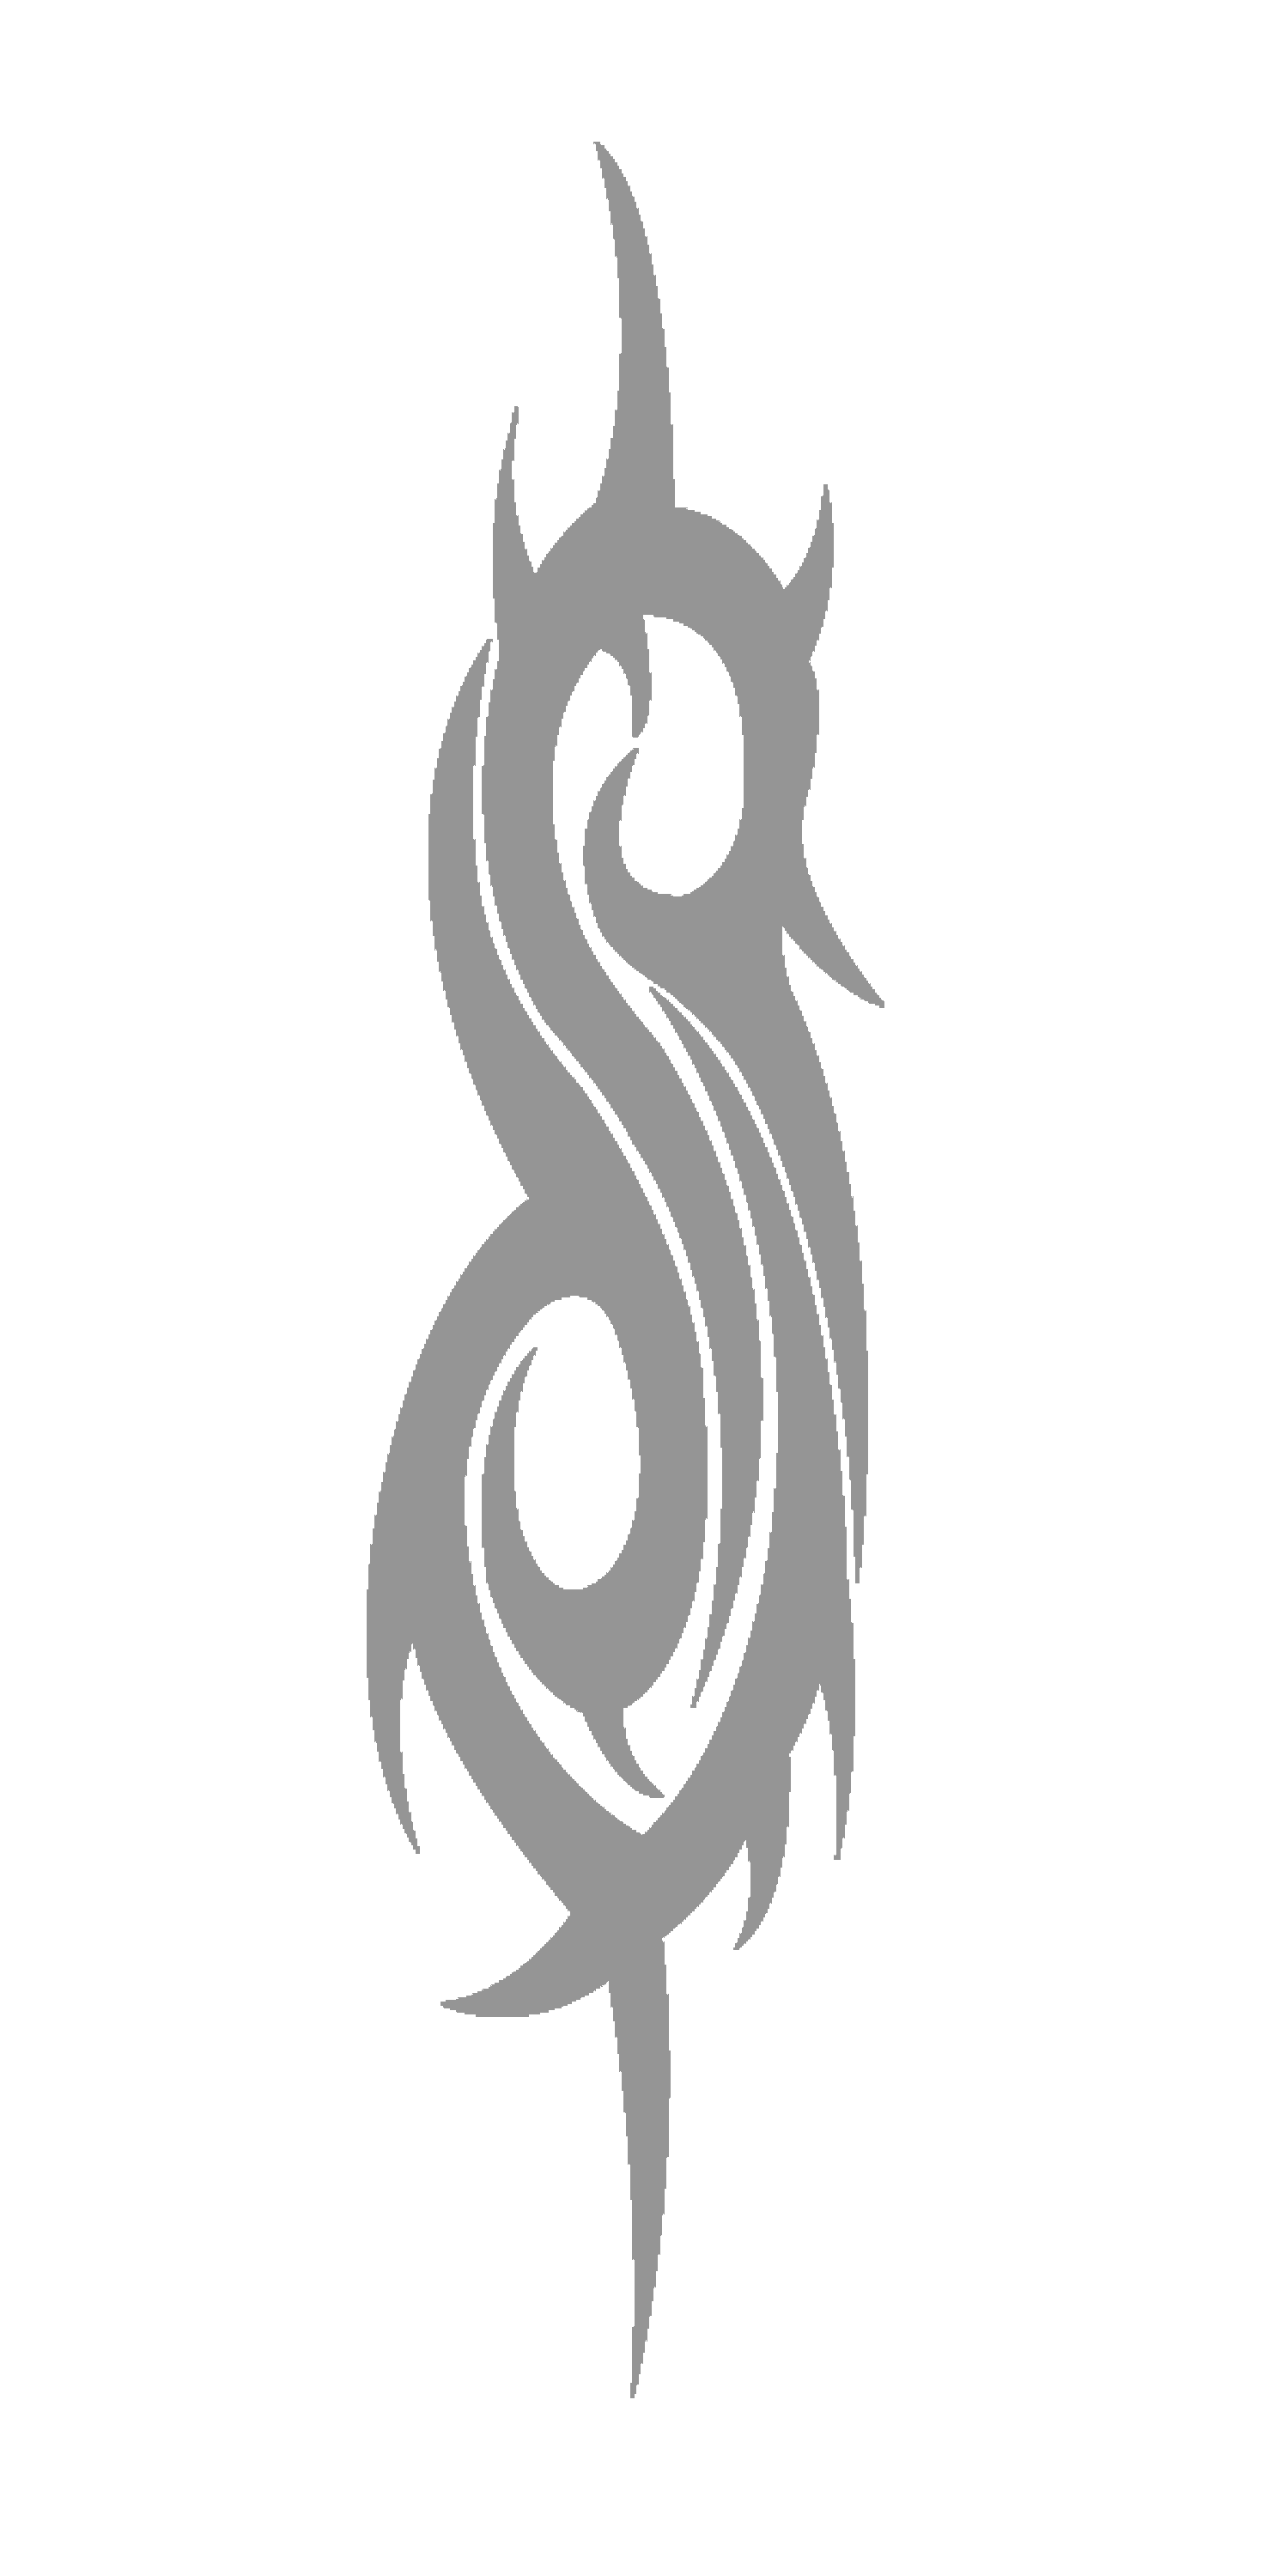 Slipknot Logo - Slipknot